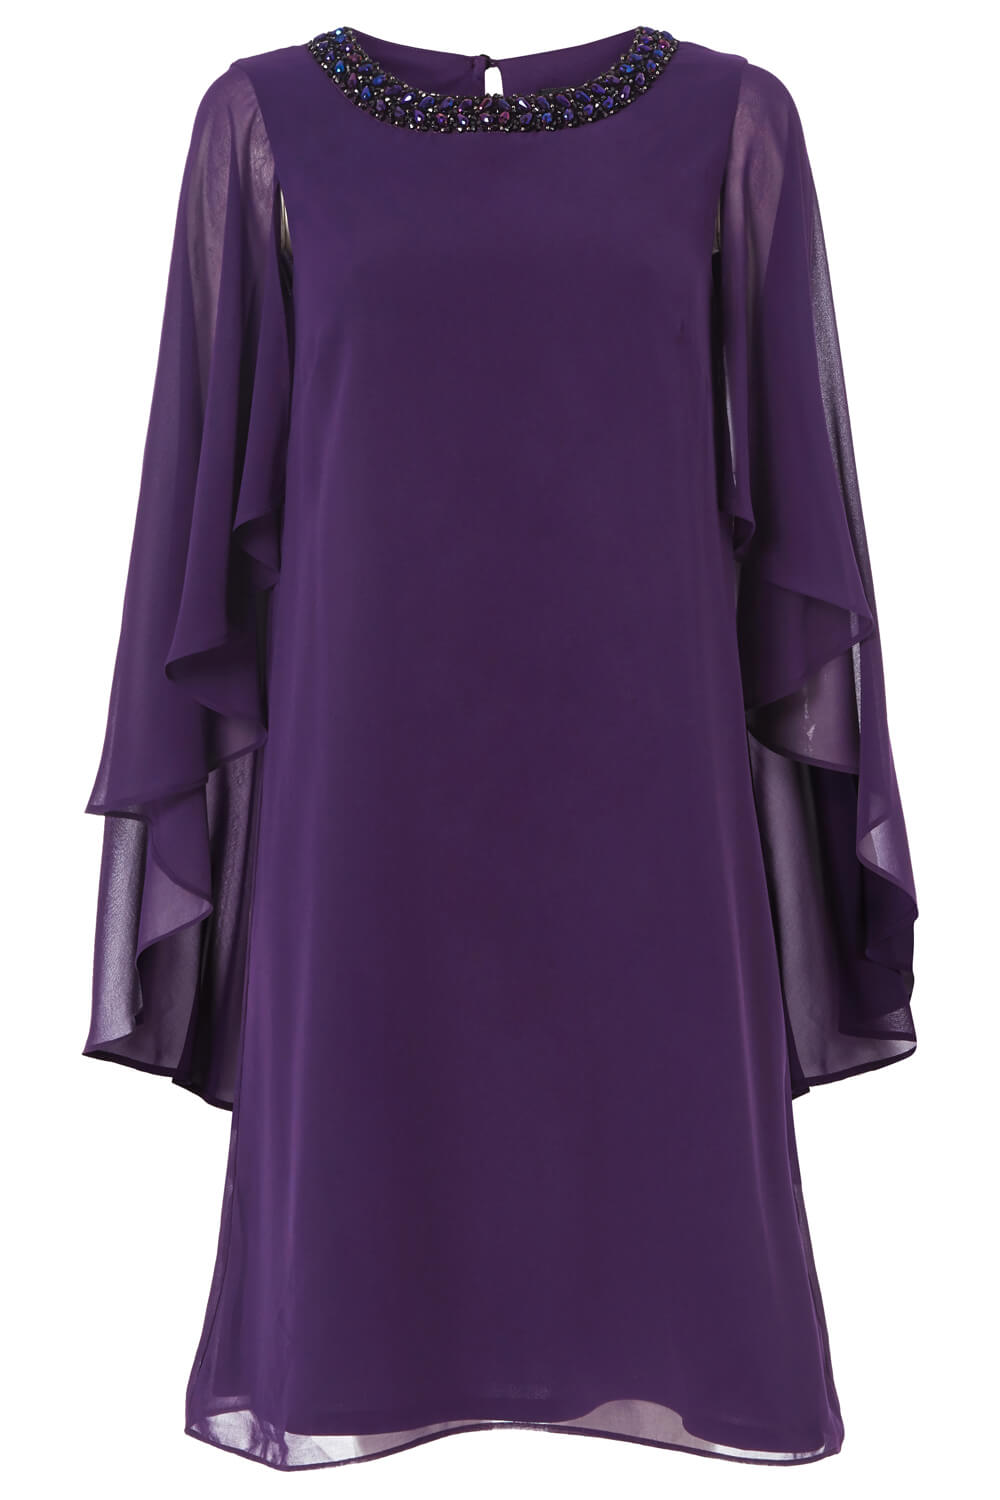 Purple Embellished Trim Chiffon Dress, Image 5 of 5